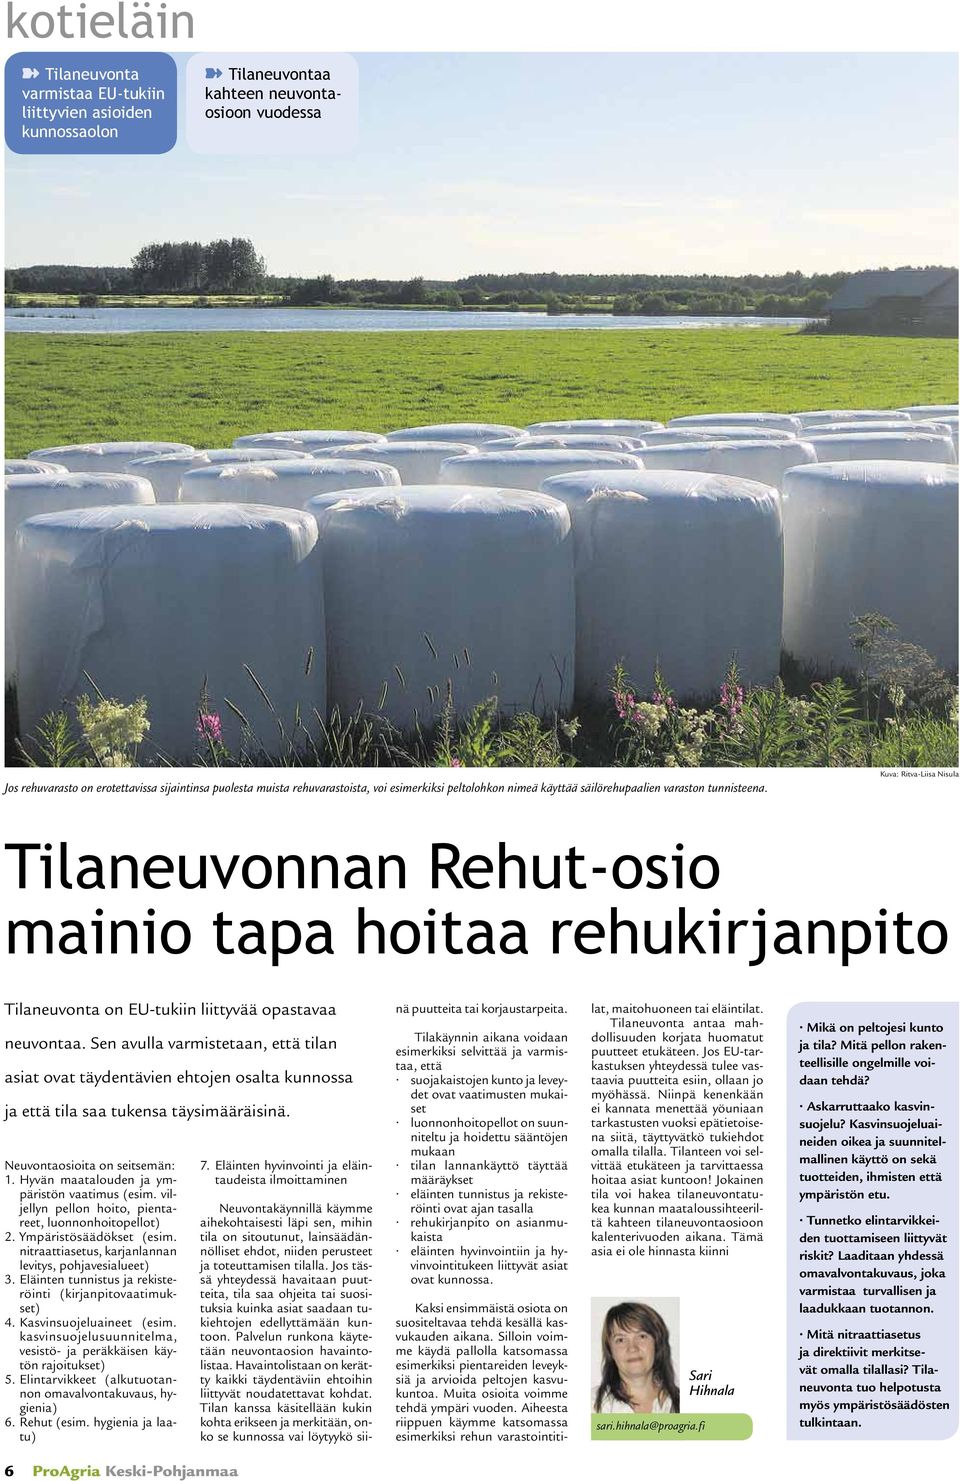 Kuva: Ritva-Liisa Nisula Tilaneuvonnan Rehut-osio mainio tapa hoitaa rehukirjanpito Tilaneuvonta on EU-tukiin liittyvää opastavaa neuvontaa.